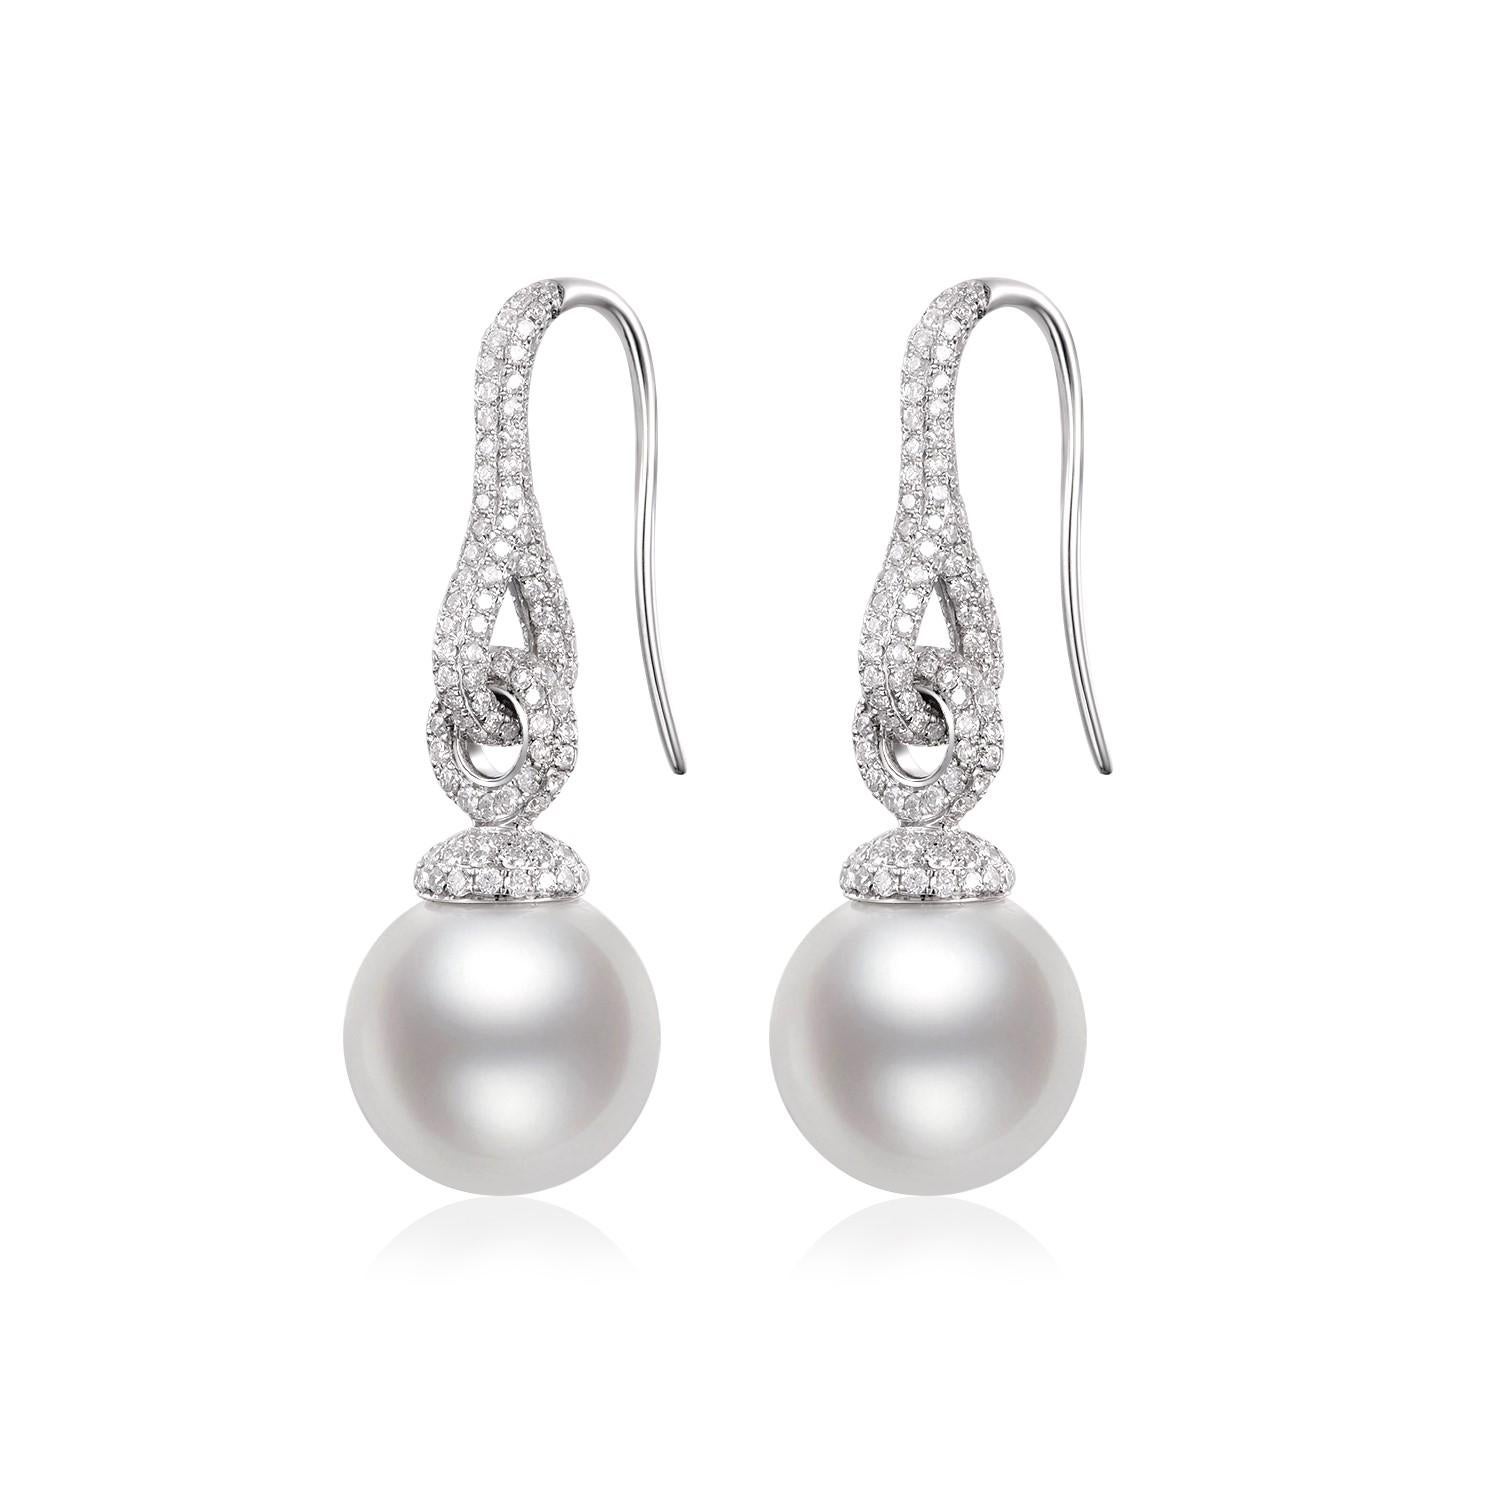 L'Elegance trouve sa quintessence dans les boucles d'oreilles pendantes en perles des mers du Sud et diamants. Réalisée en or blanc 14 carats, cette paire est une expression sublime du luxe et de l'art. Au cœur de chaque boucle d'oreille se trouve